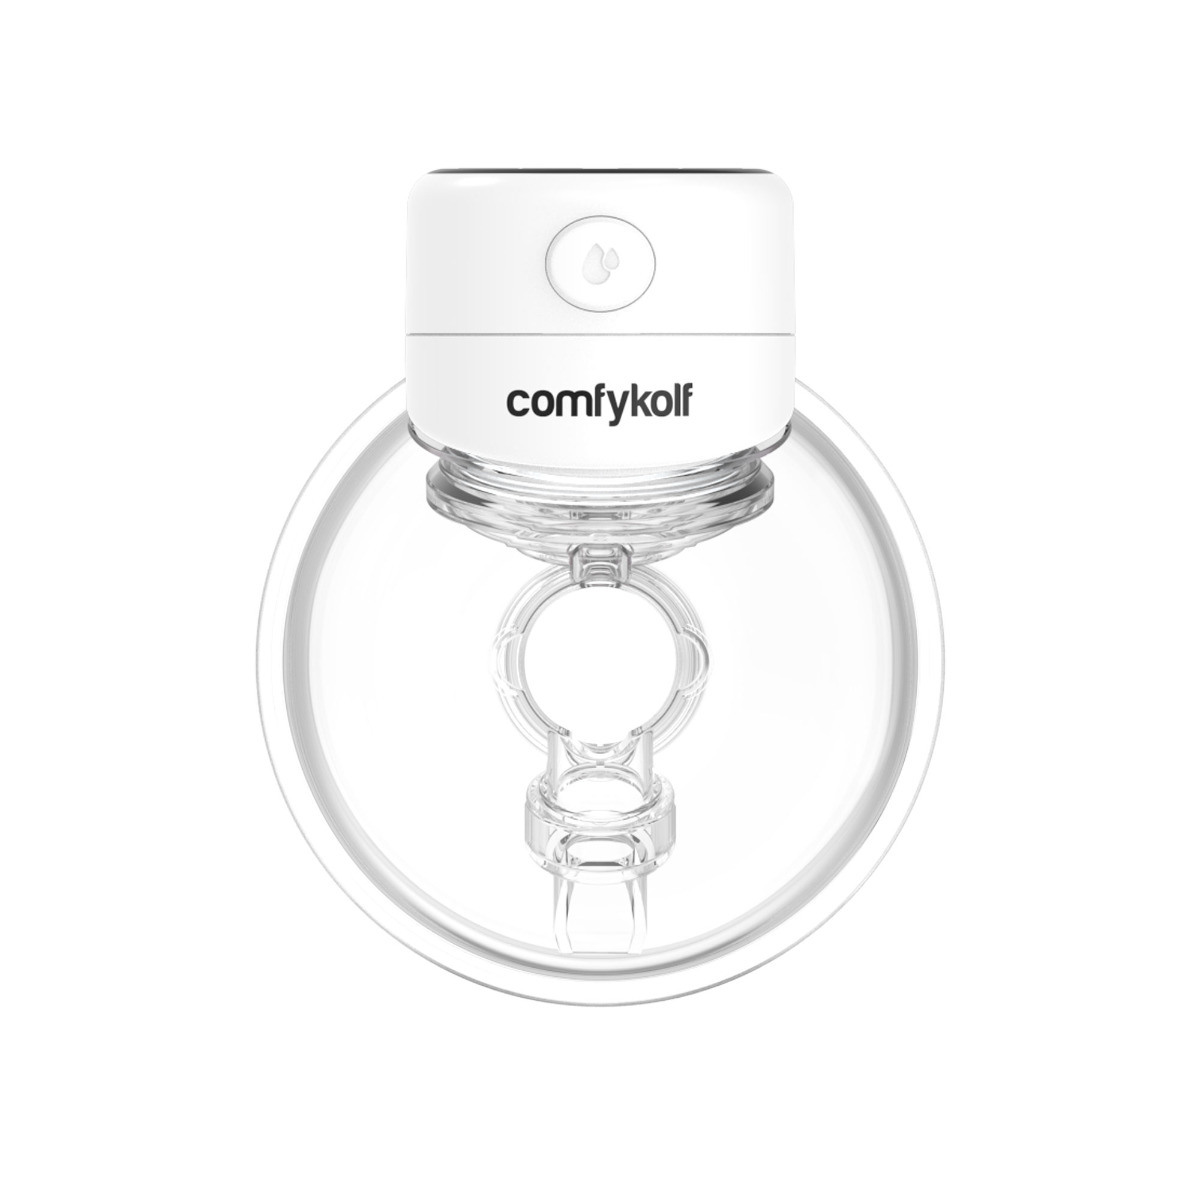 ComfyKolf Pro Wit - Freihändige elektrische Milchpumpe